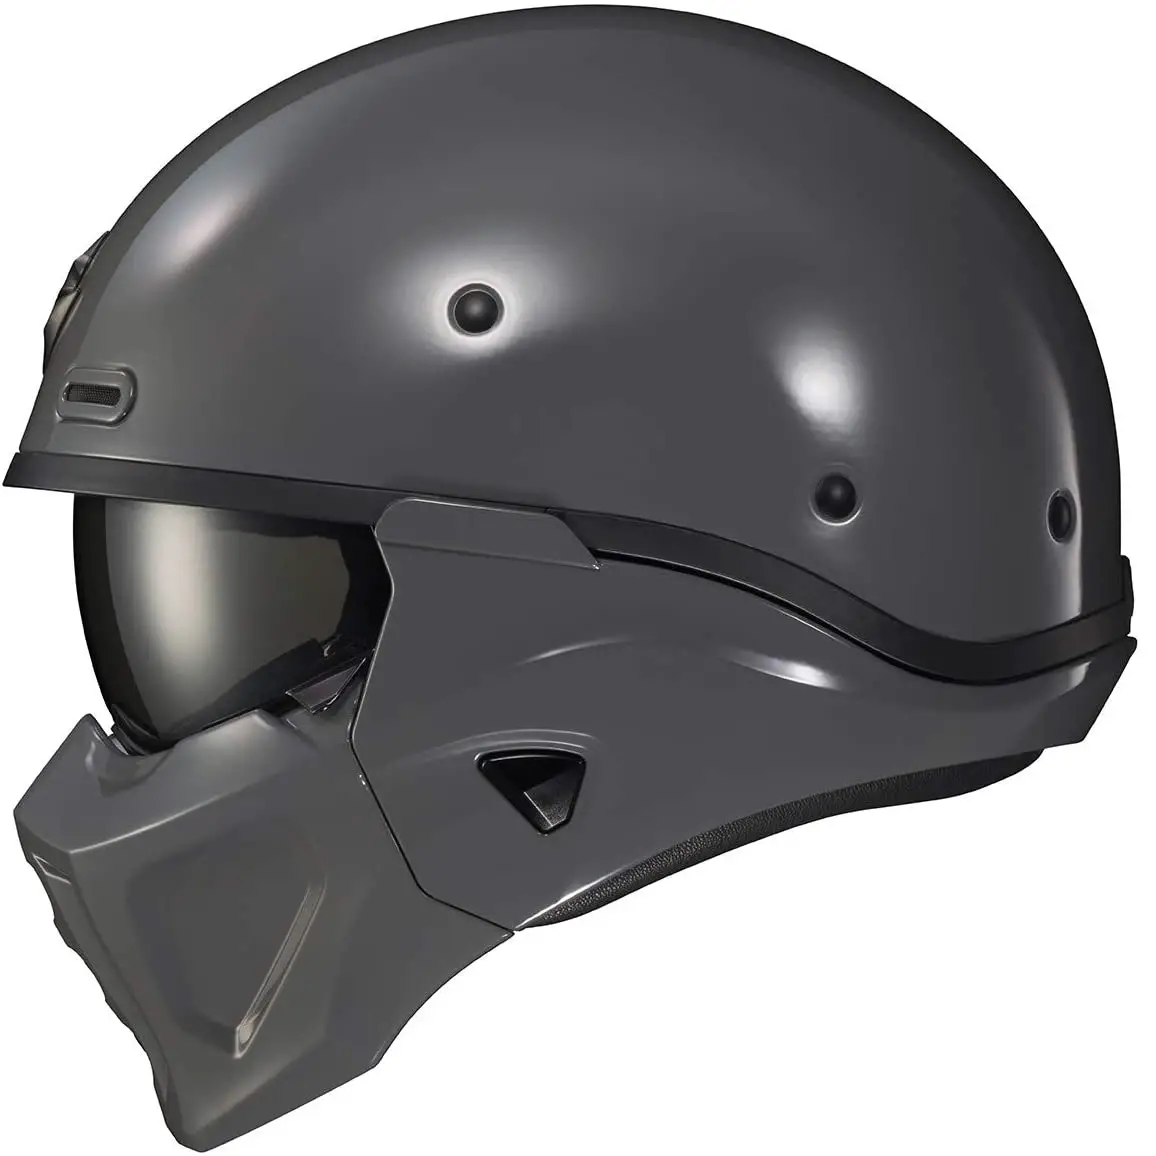 Top 5 Best Motorcycle Helmets Under $300 [2021 Review] - HelmetsGuide